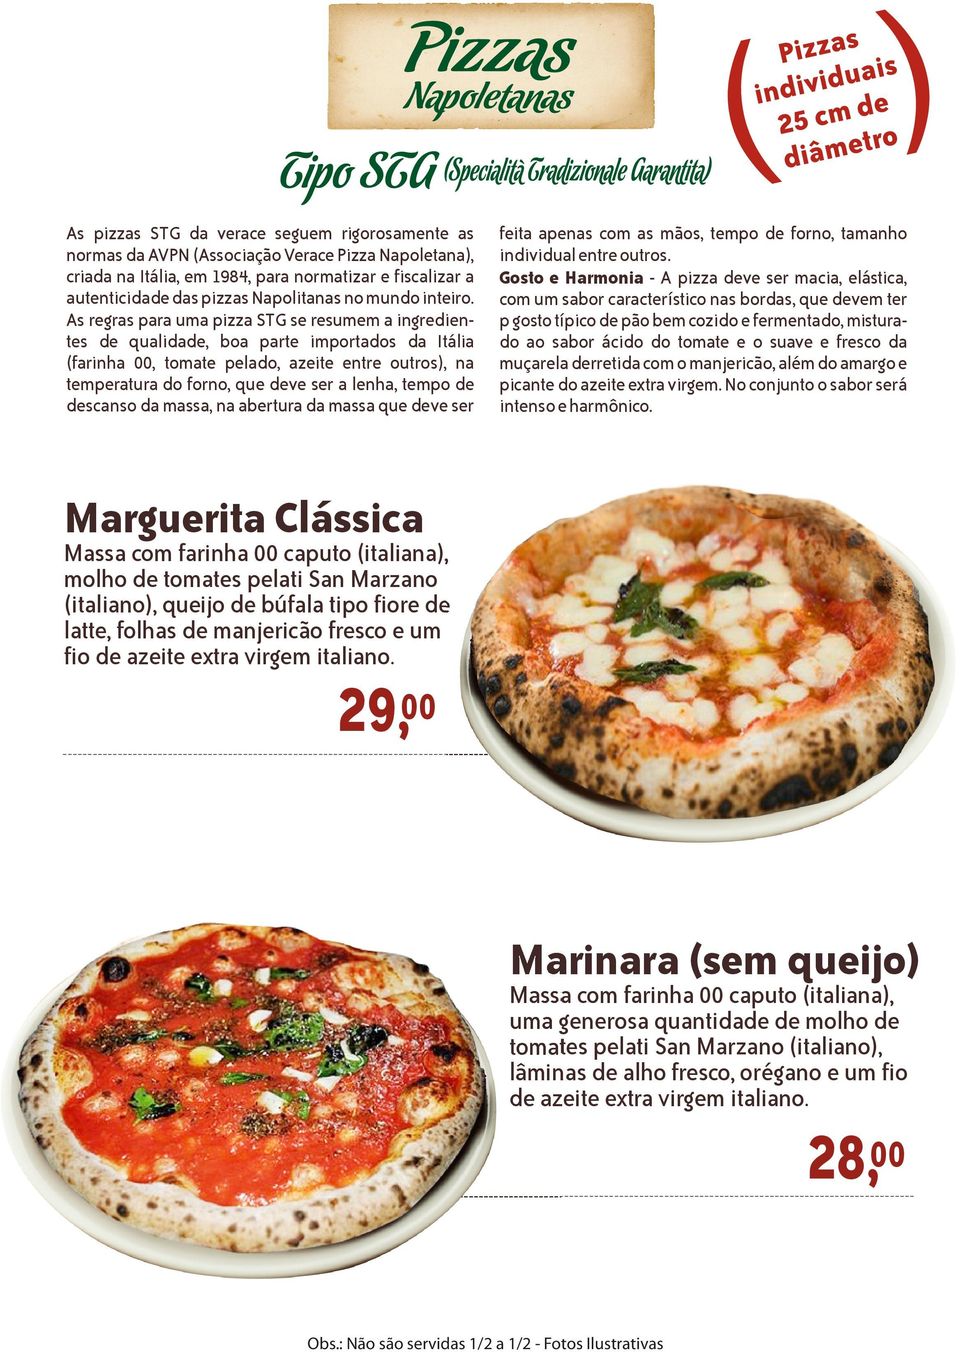 As regras para uma pizza STG se resumem a ingredientes de qualidade, boa parte importados da Itália (farinha, tomate pelado, azeite entre outros), na temperatura do forno, que deve ser a lenha, tempo